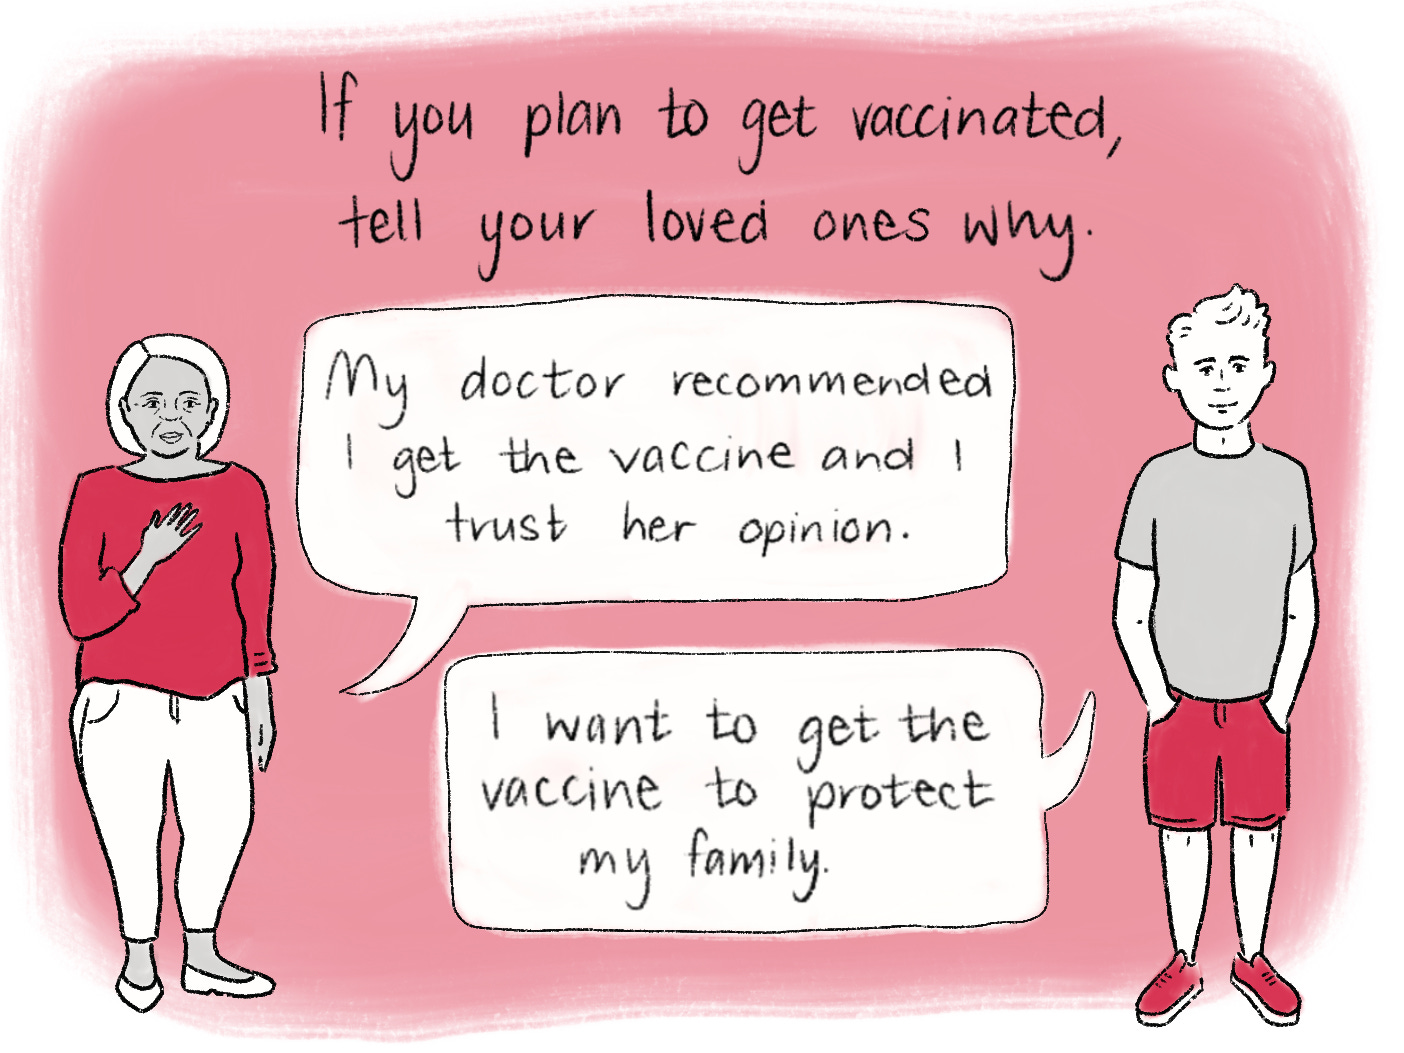 Vaccination comic scene 23. Read the transcript below.